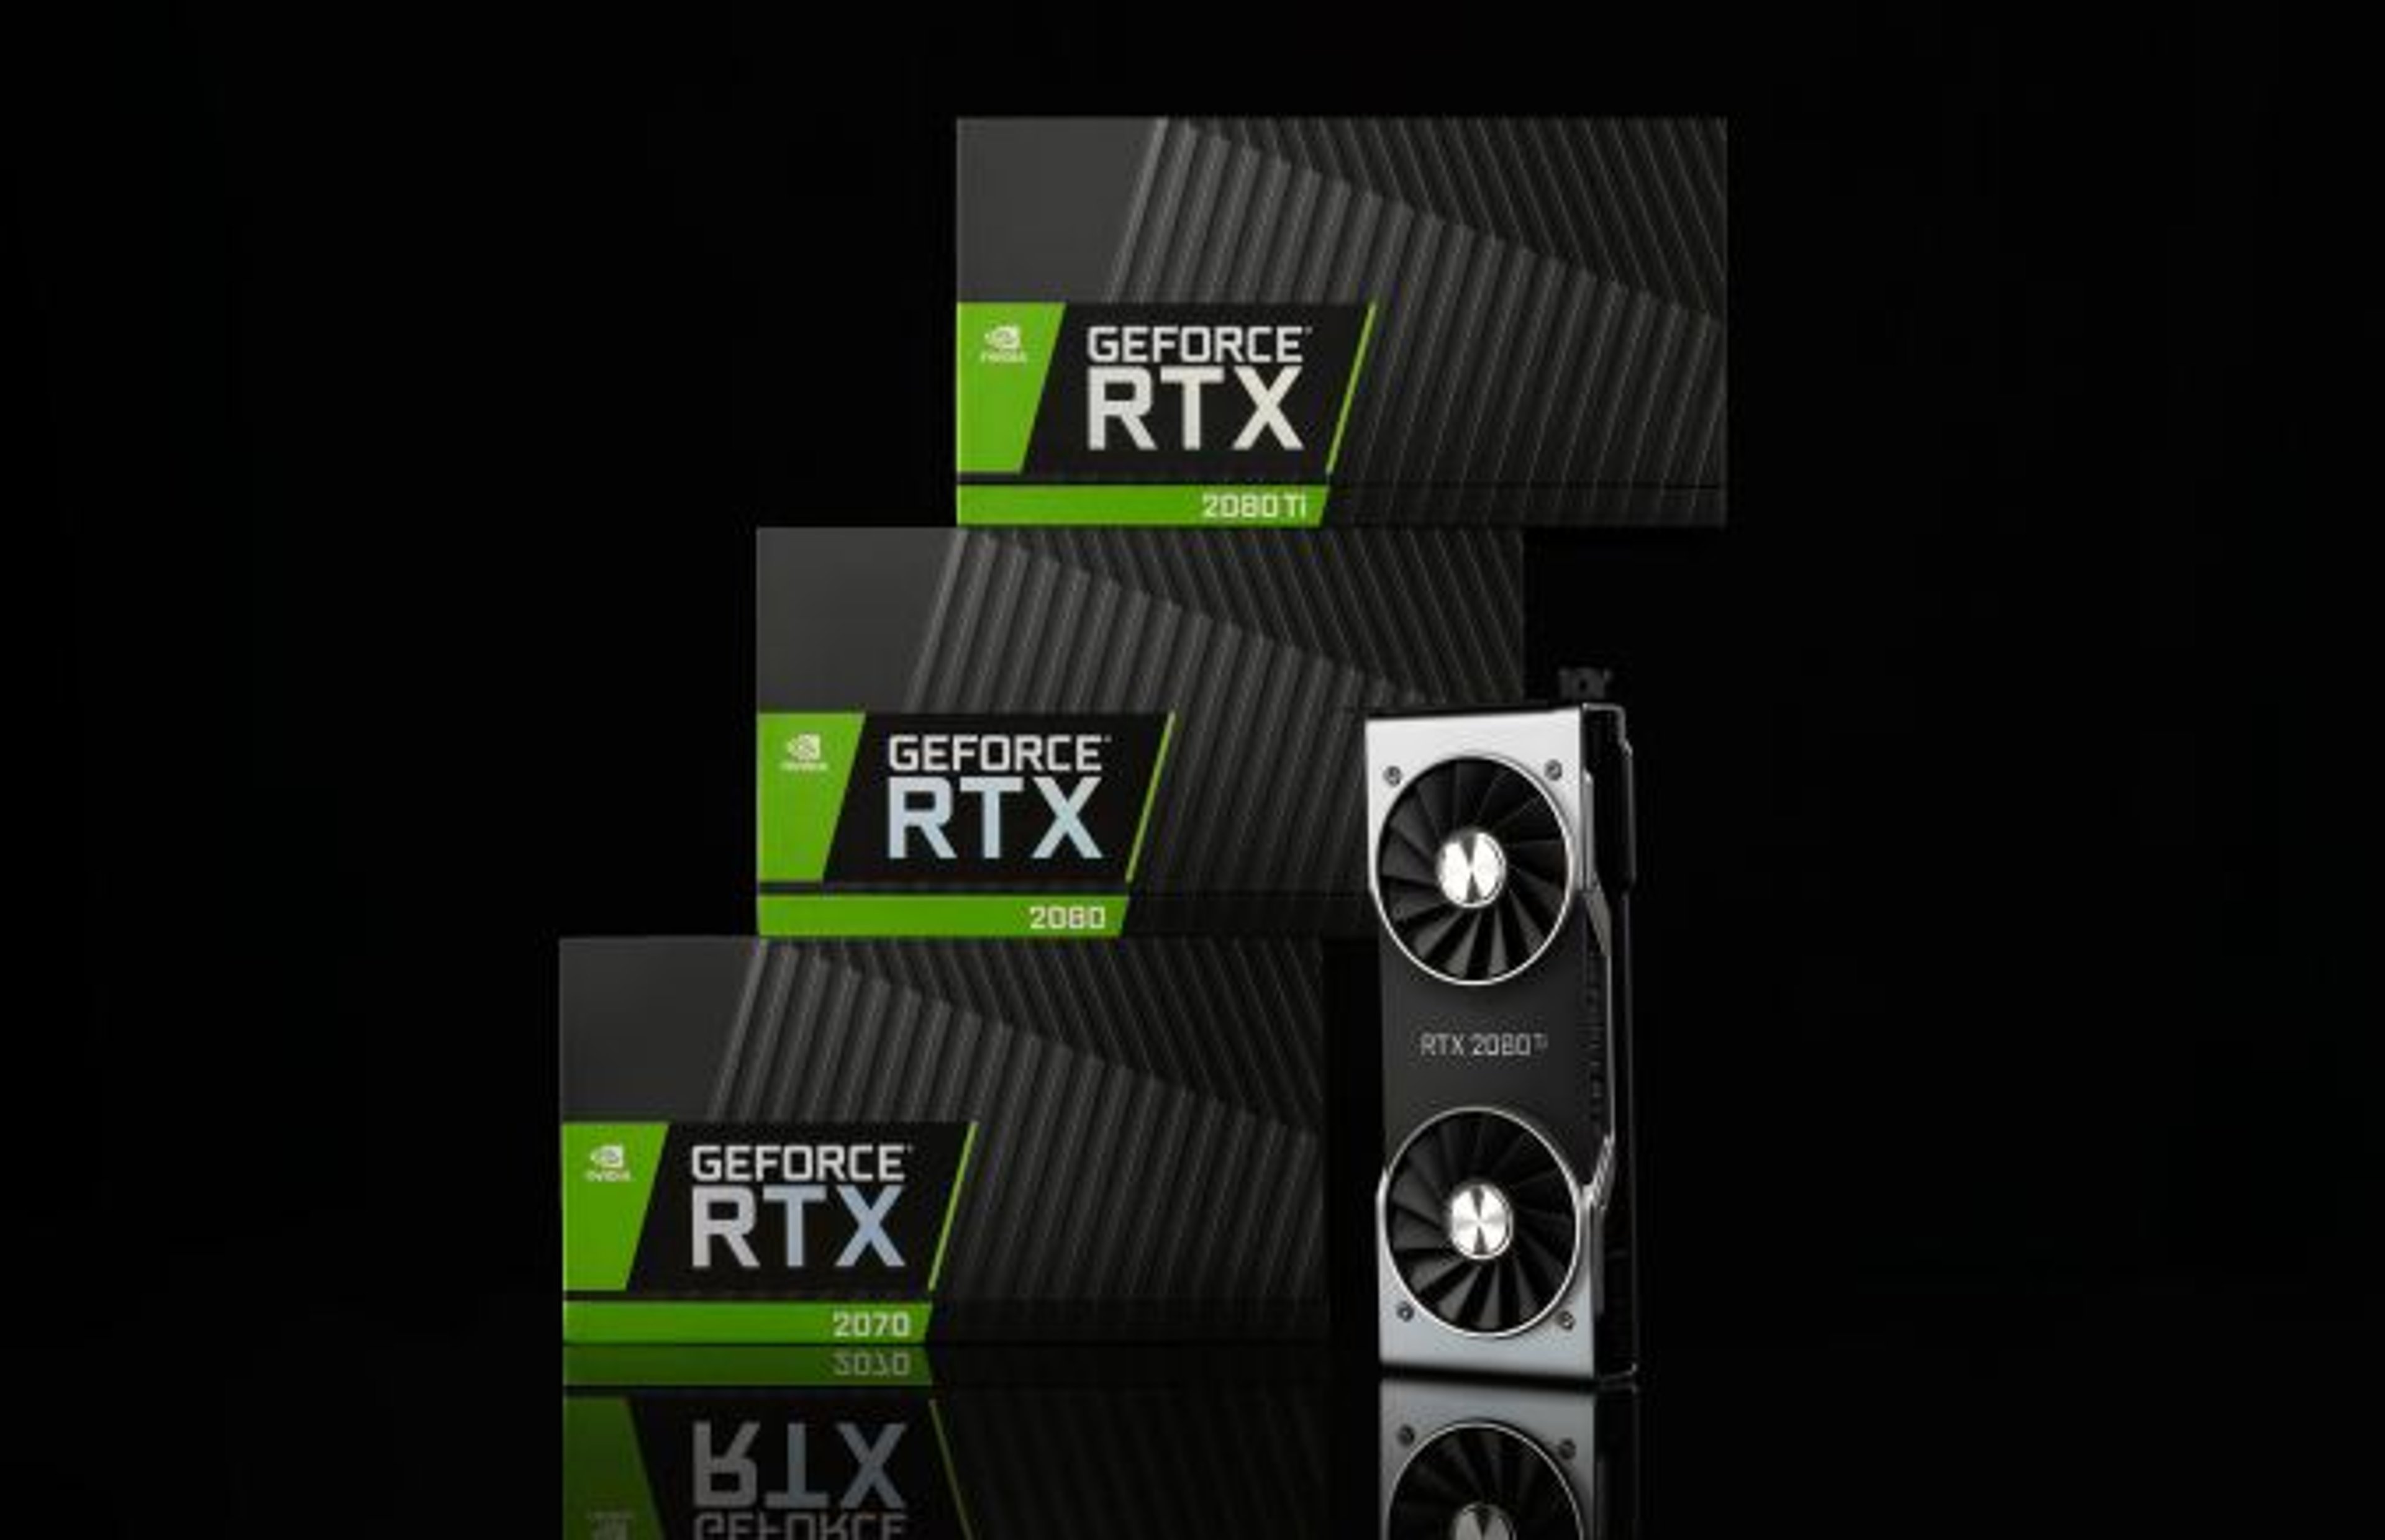 Nvidia RTX: nuove schede grafiche sempre più potenti e performanti. Copertina